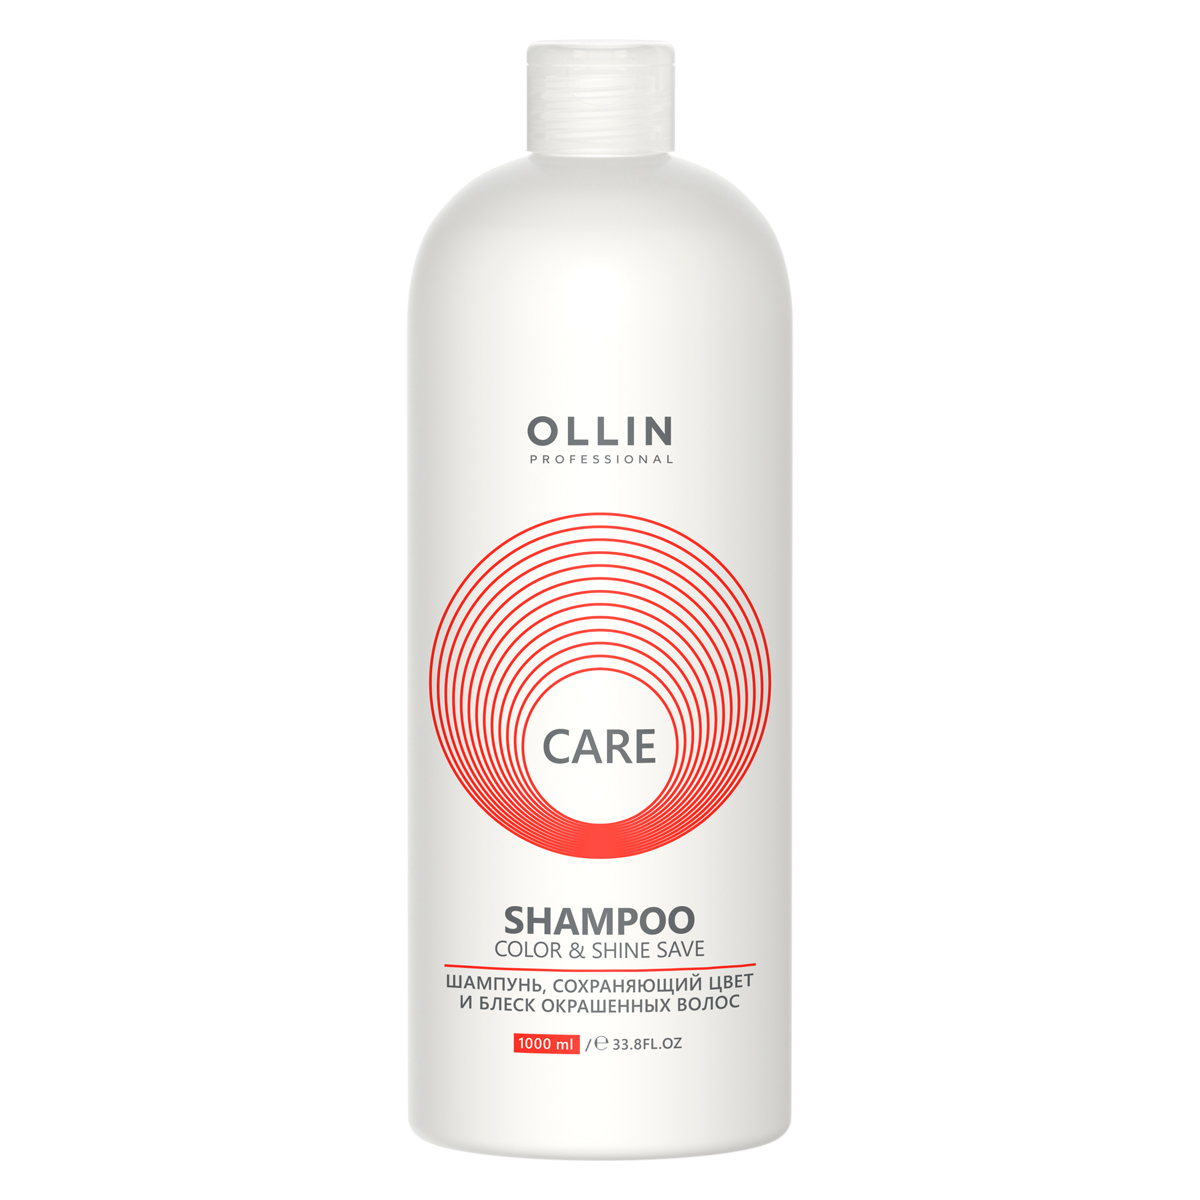 цена Ollin Professional Шампунь, сохраняющий цвет и блеск окрашенных волос, 1000 мл (Ollin Professional, Care)